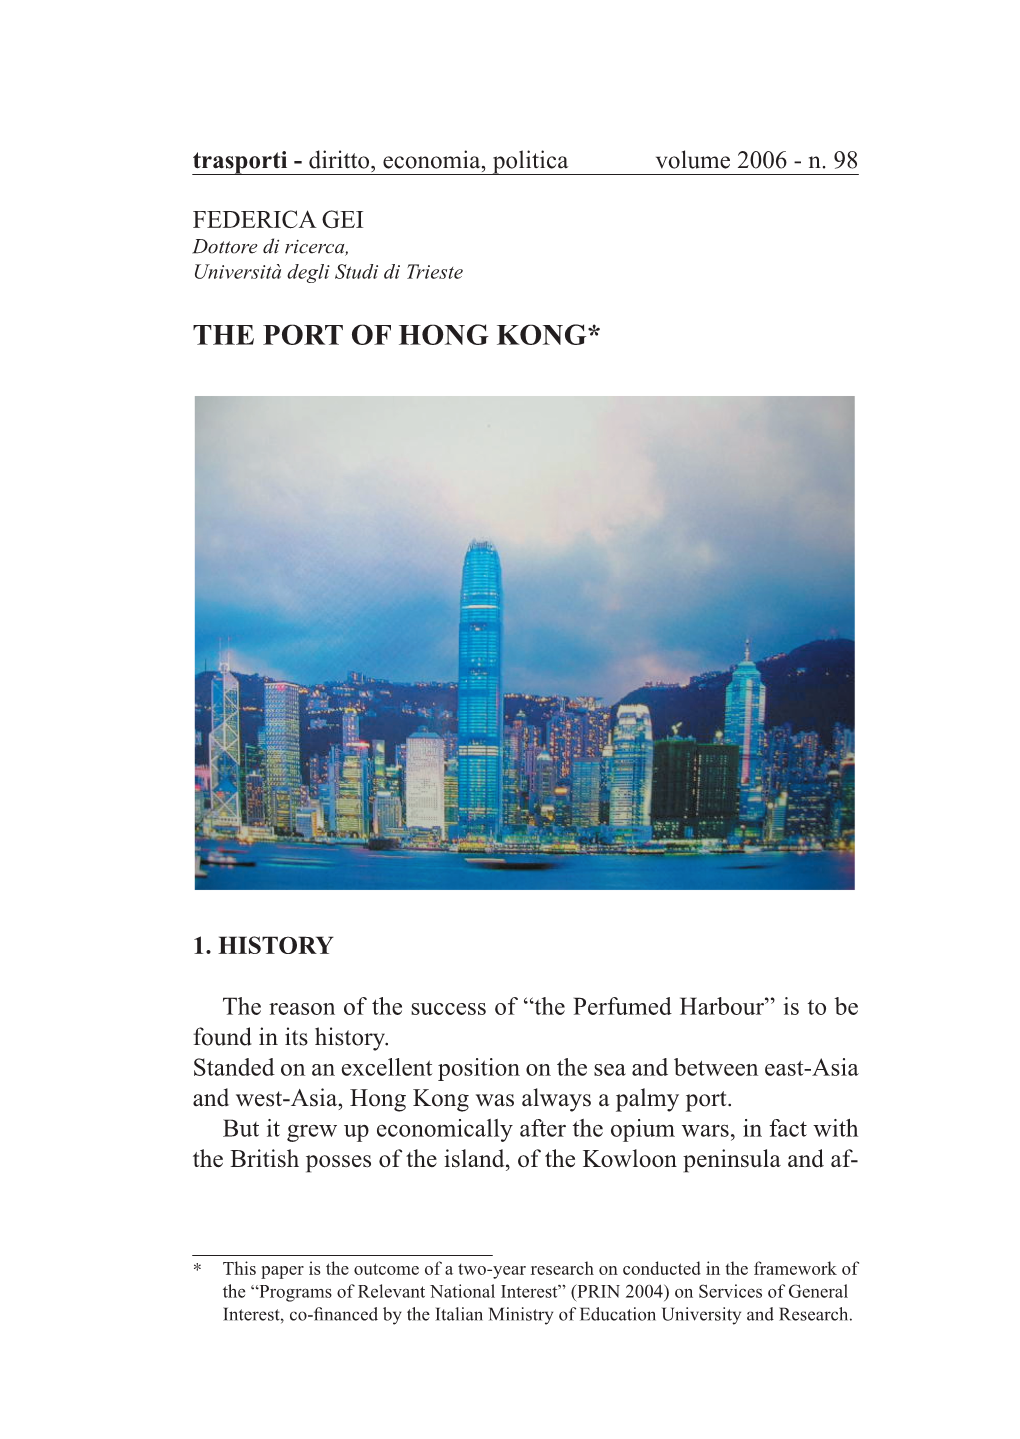 The Port of Hong Kong*